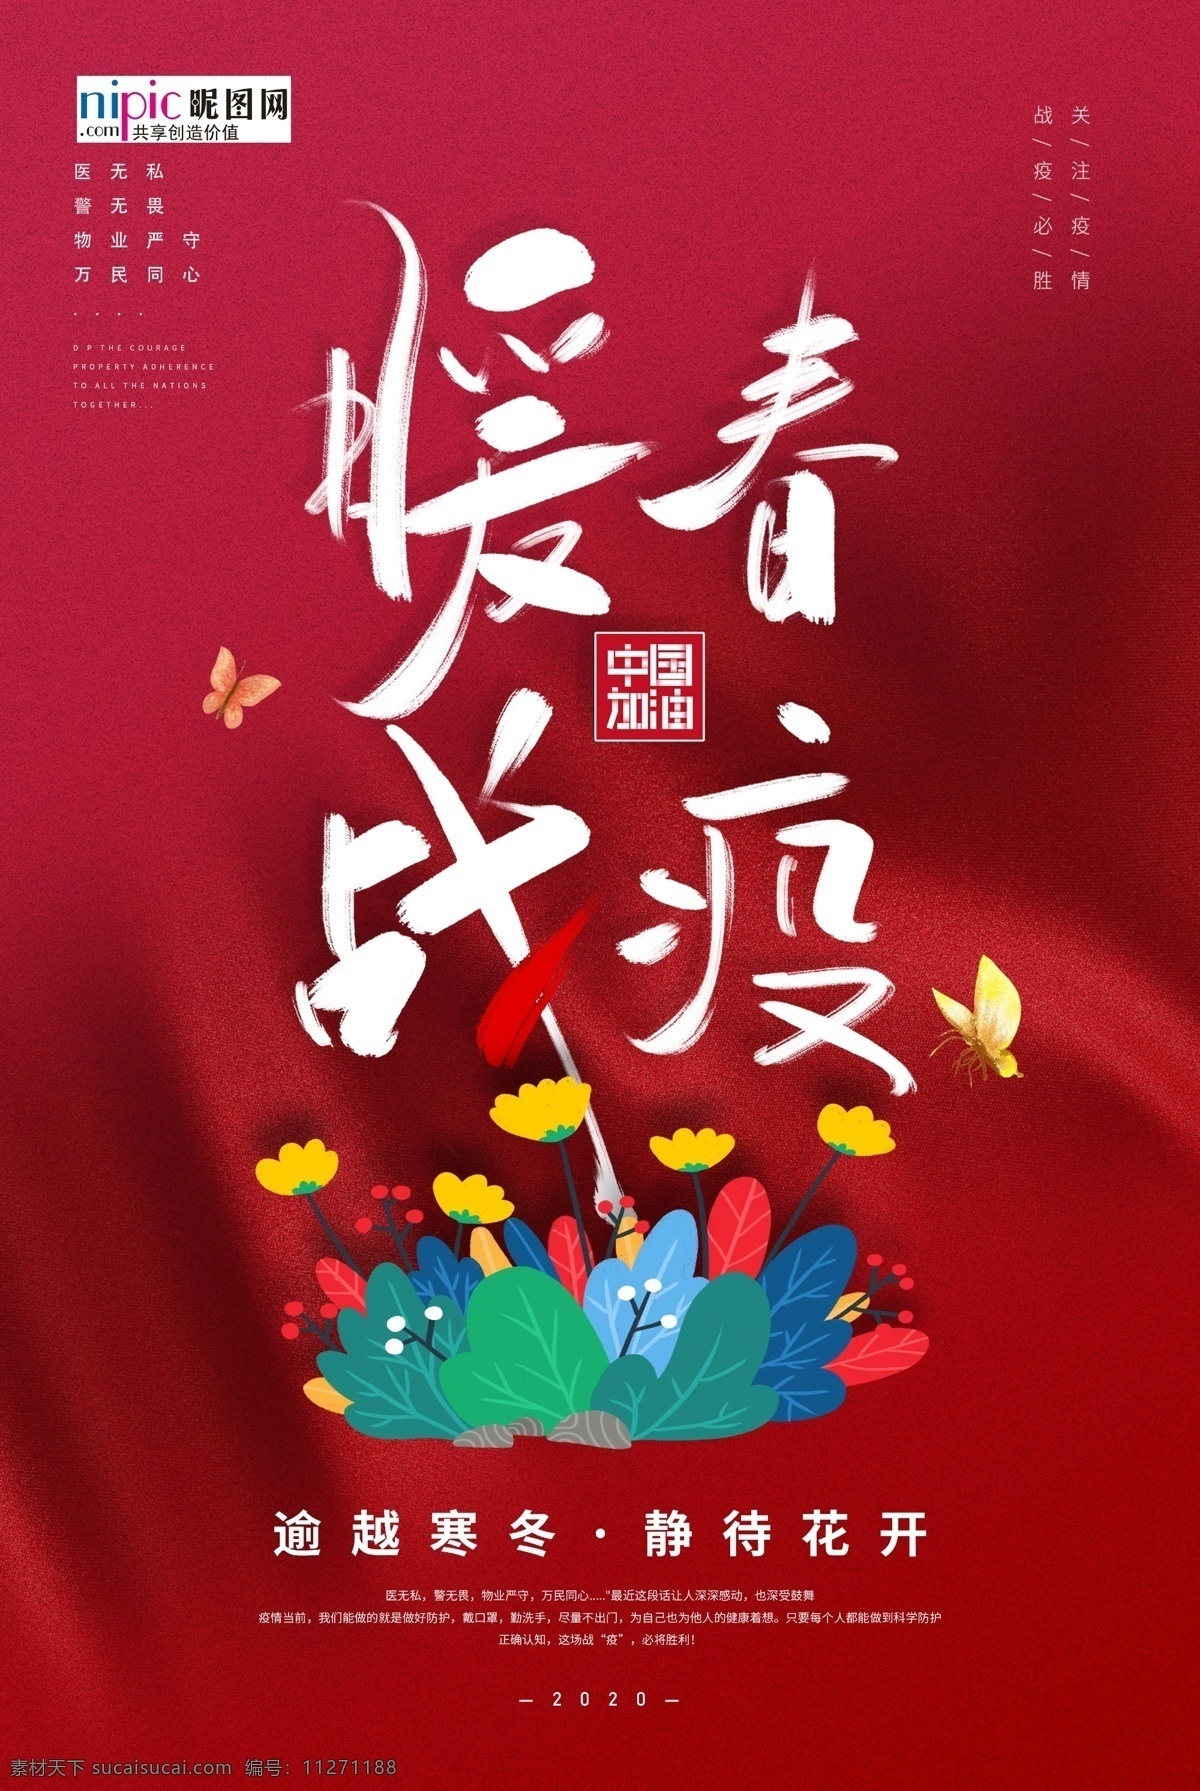 预防 武汉 冠状 肺炎 流感 病毒 海报 中国 加油 鲜花 蝴蝶